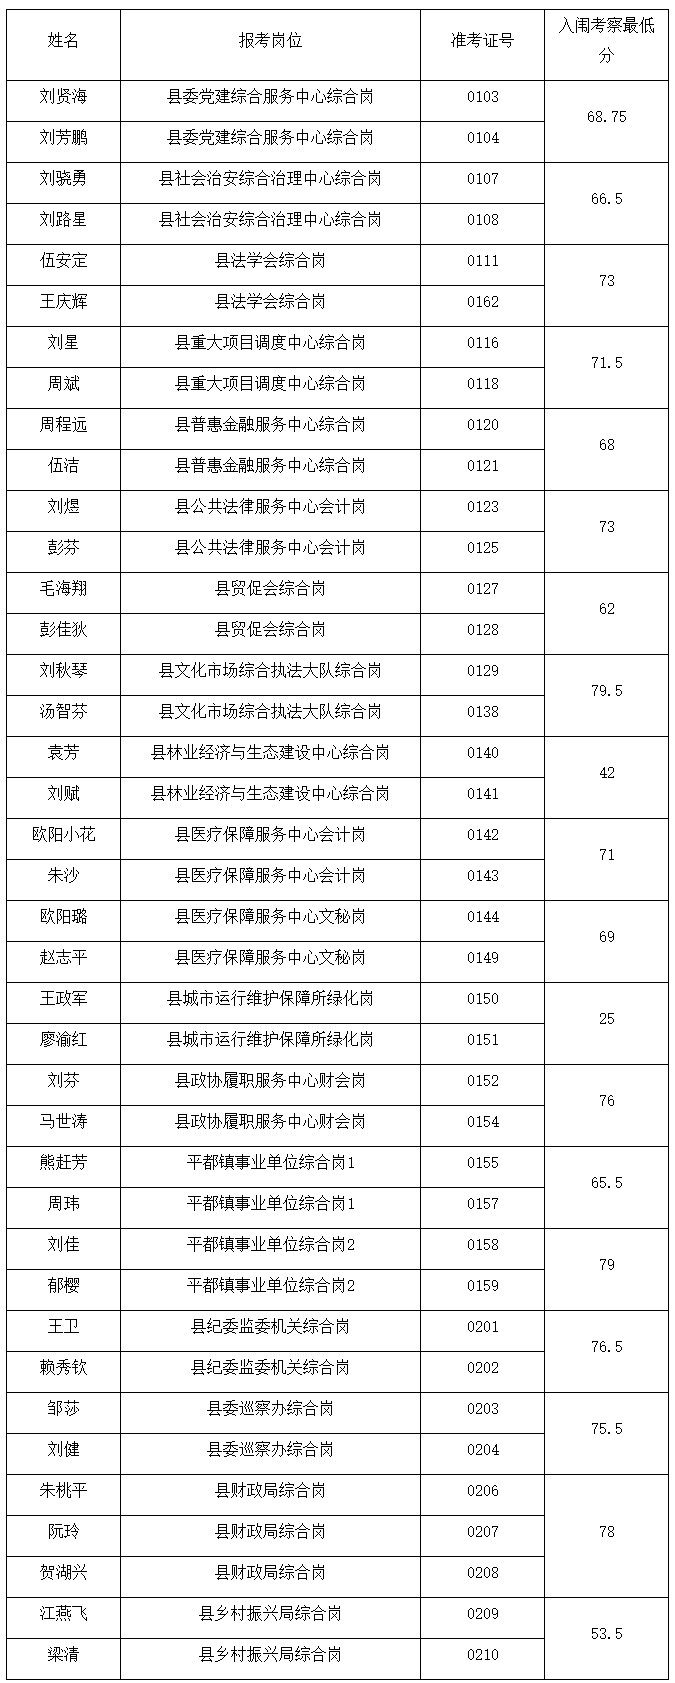 安福县机关事业单位公开遴选拟入闱考察名单.jpg